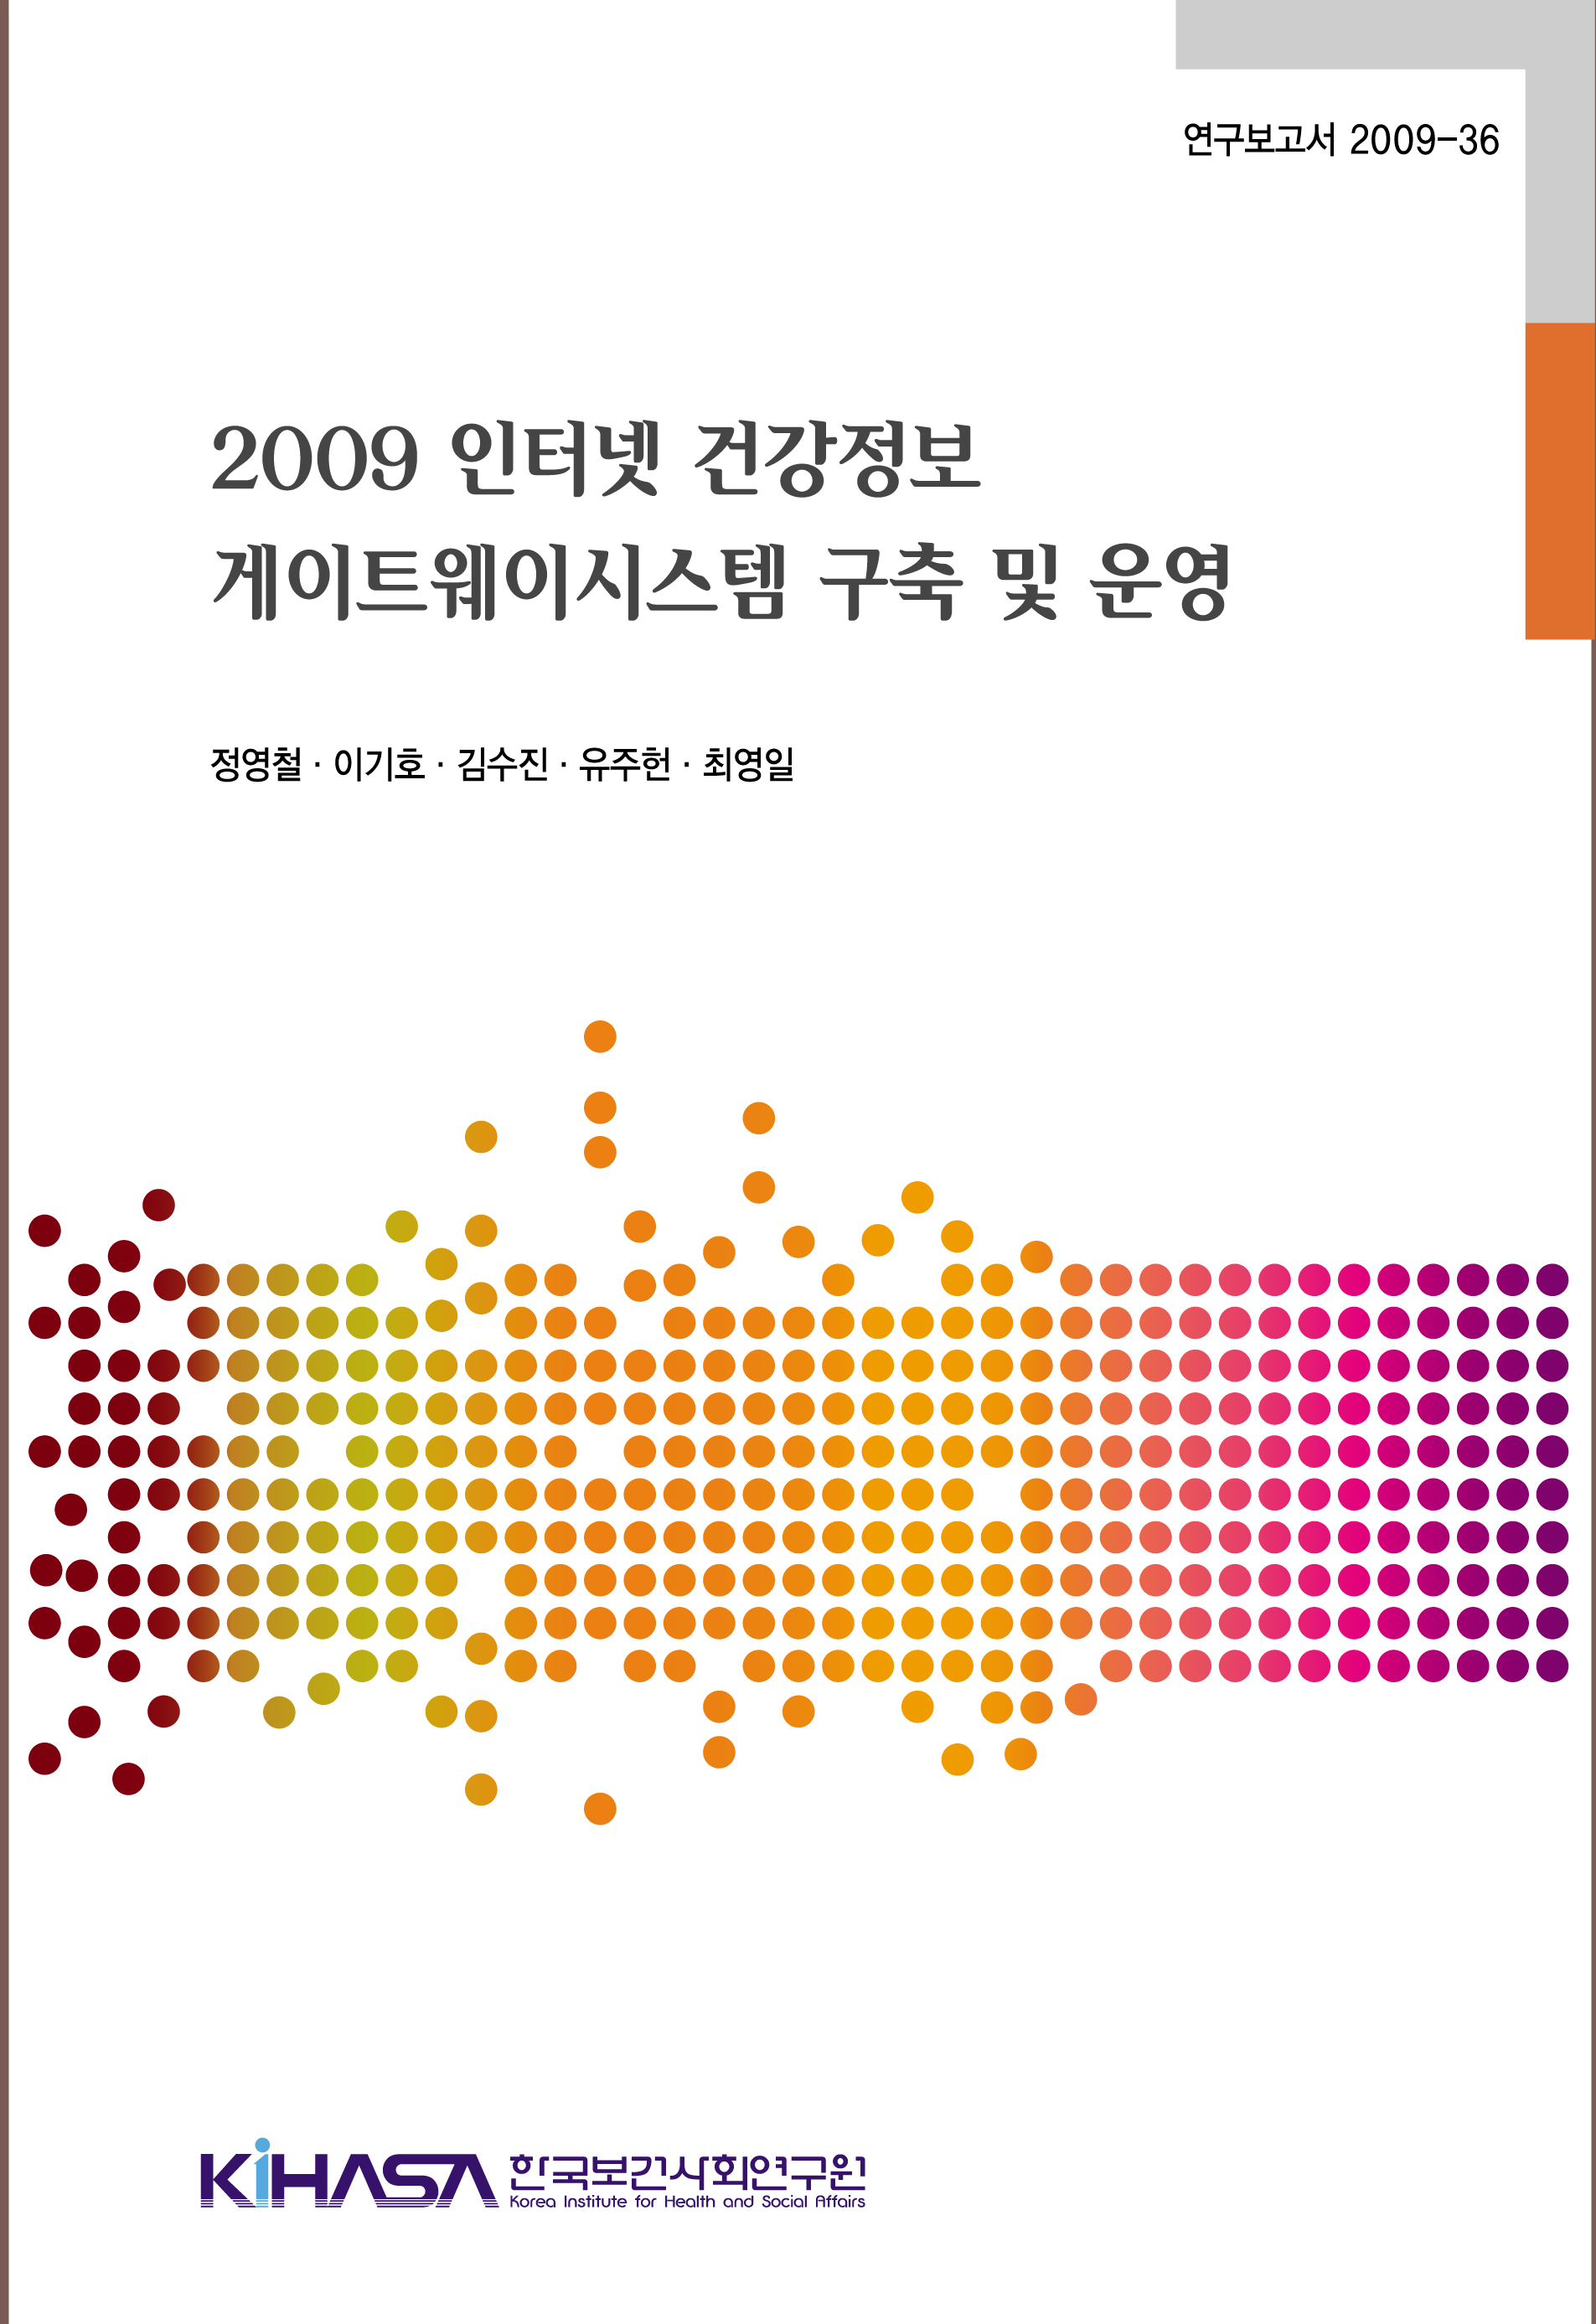 2009 인터넷 건강정보 게이트웨이시스템 구축 및 운영